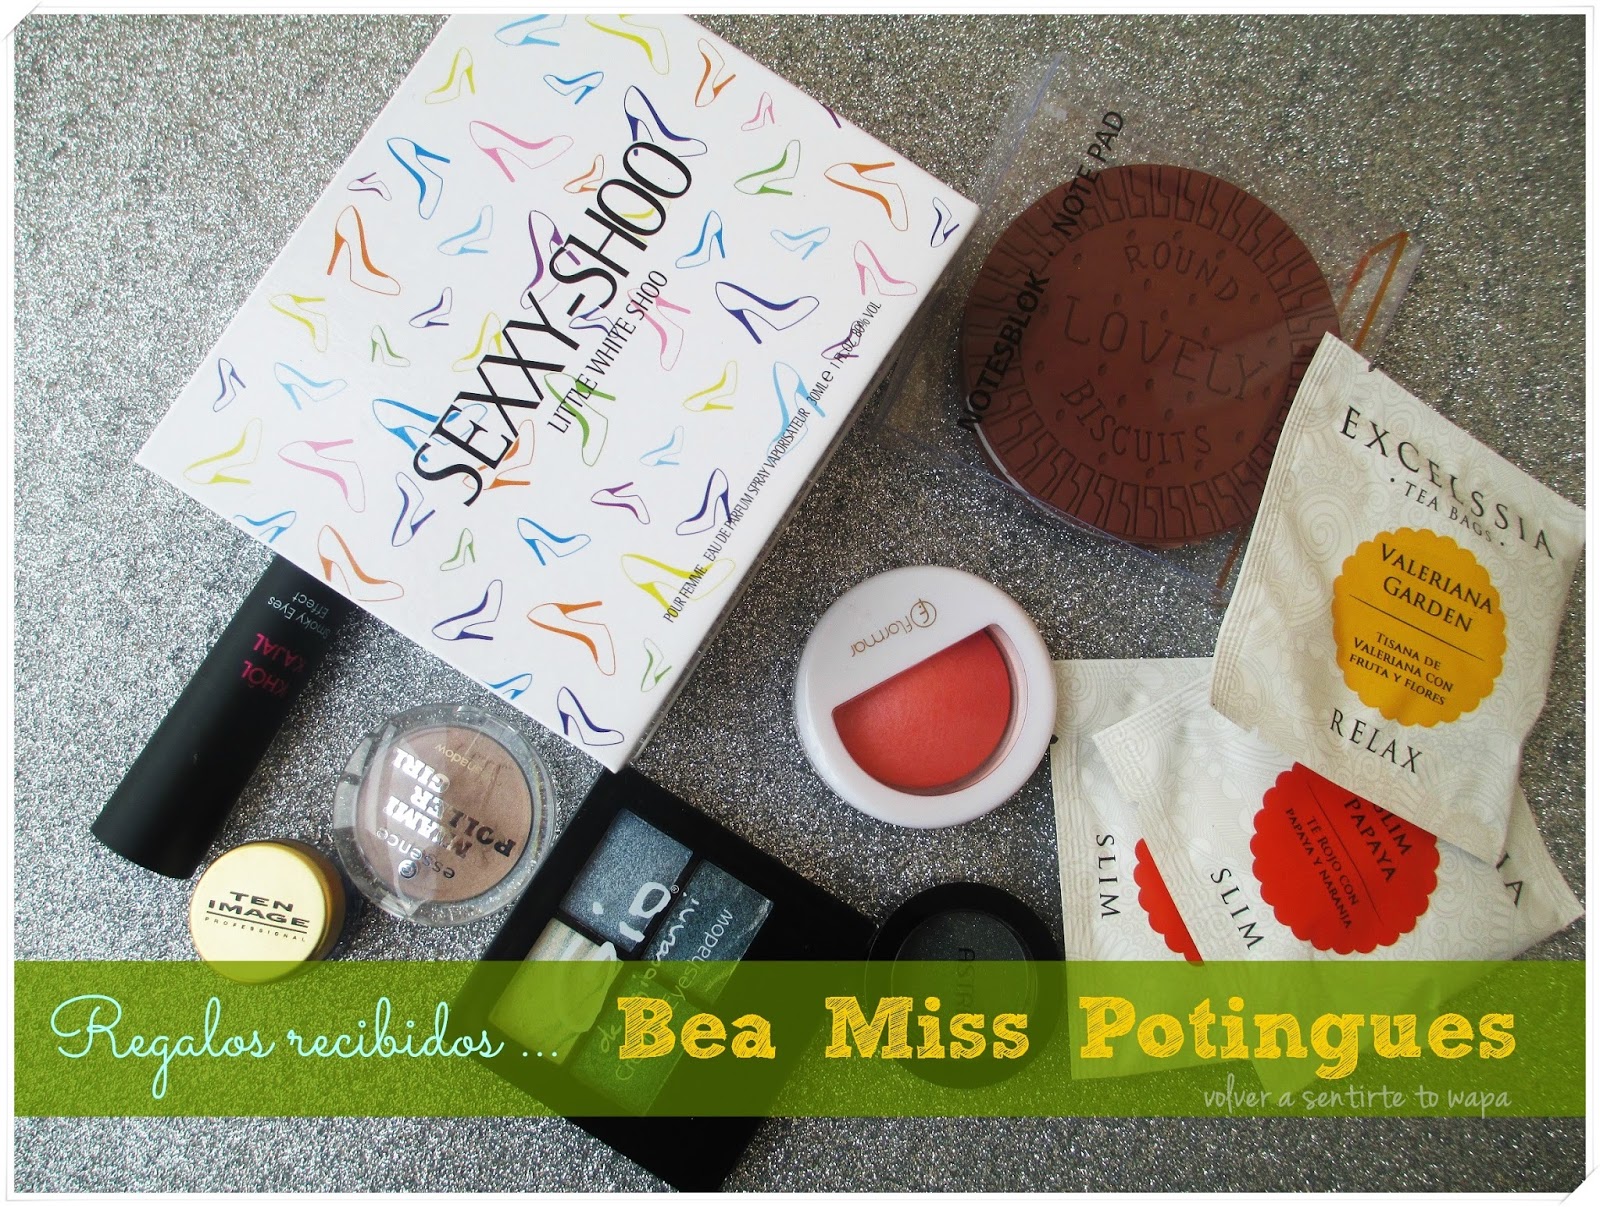 Regalos de cosmética y maquillaje de Bea de Miss Potingues